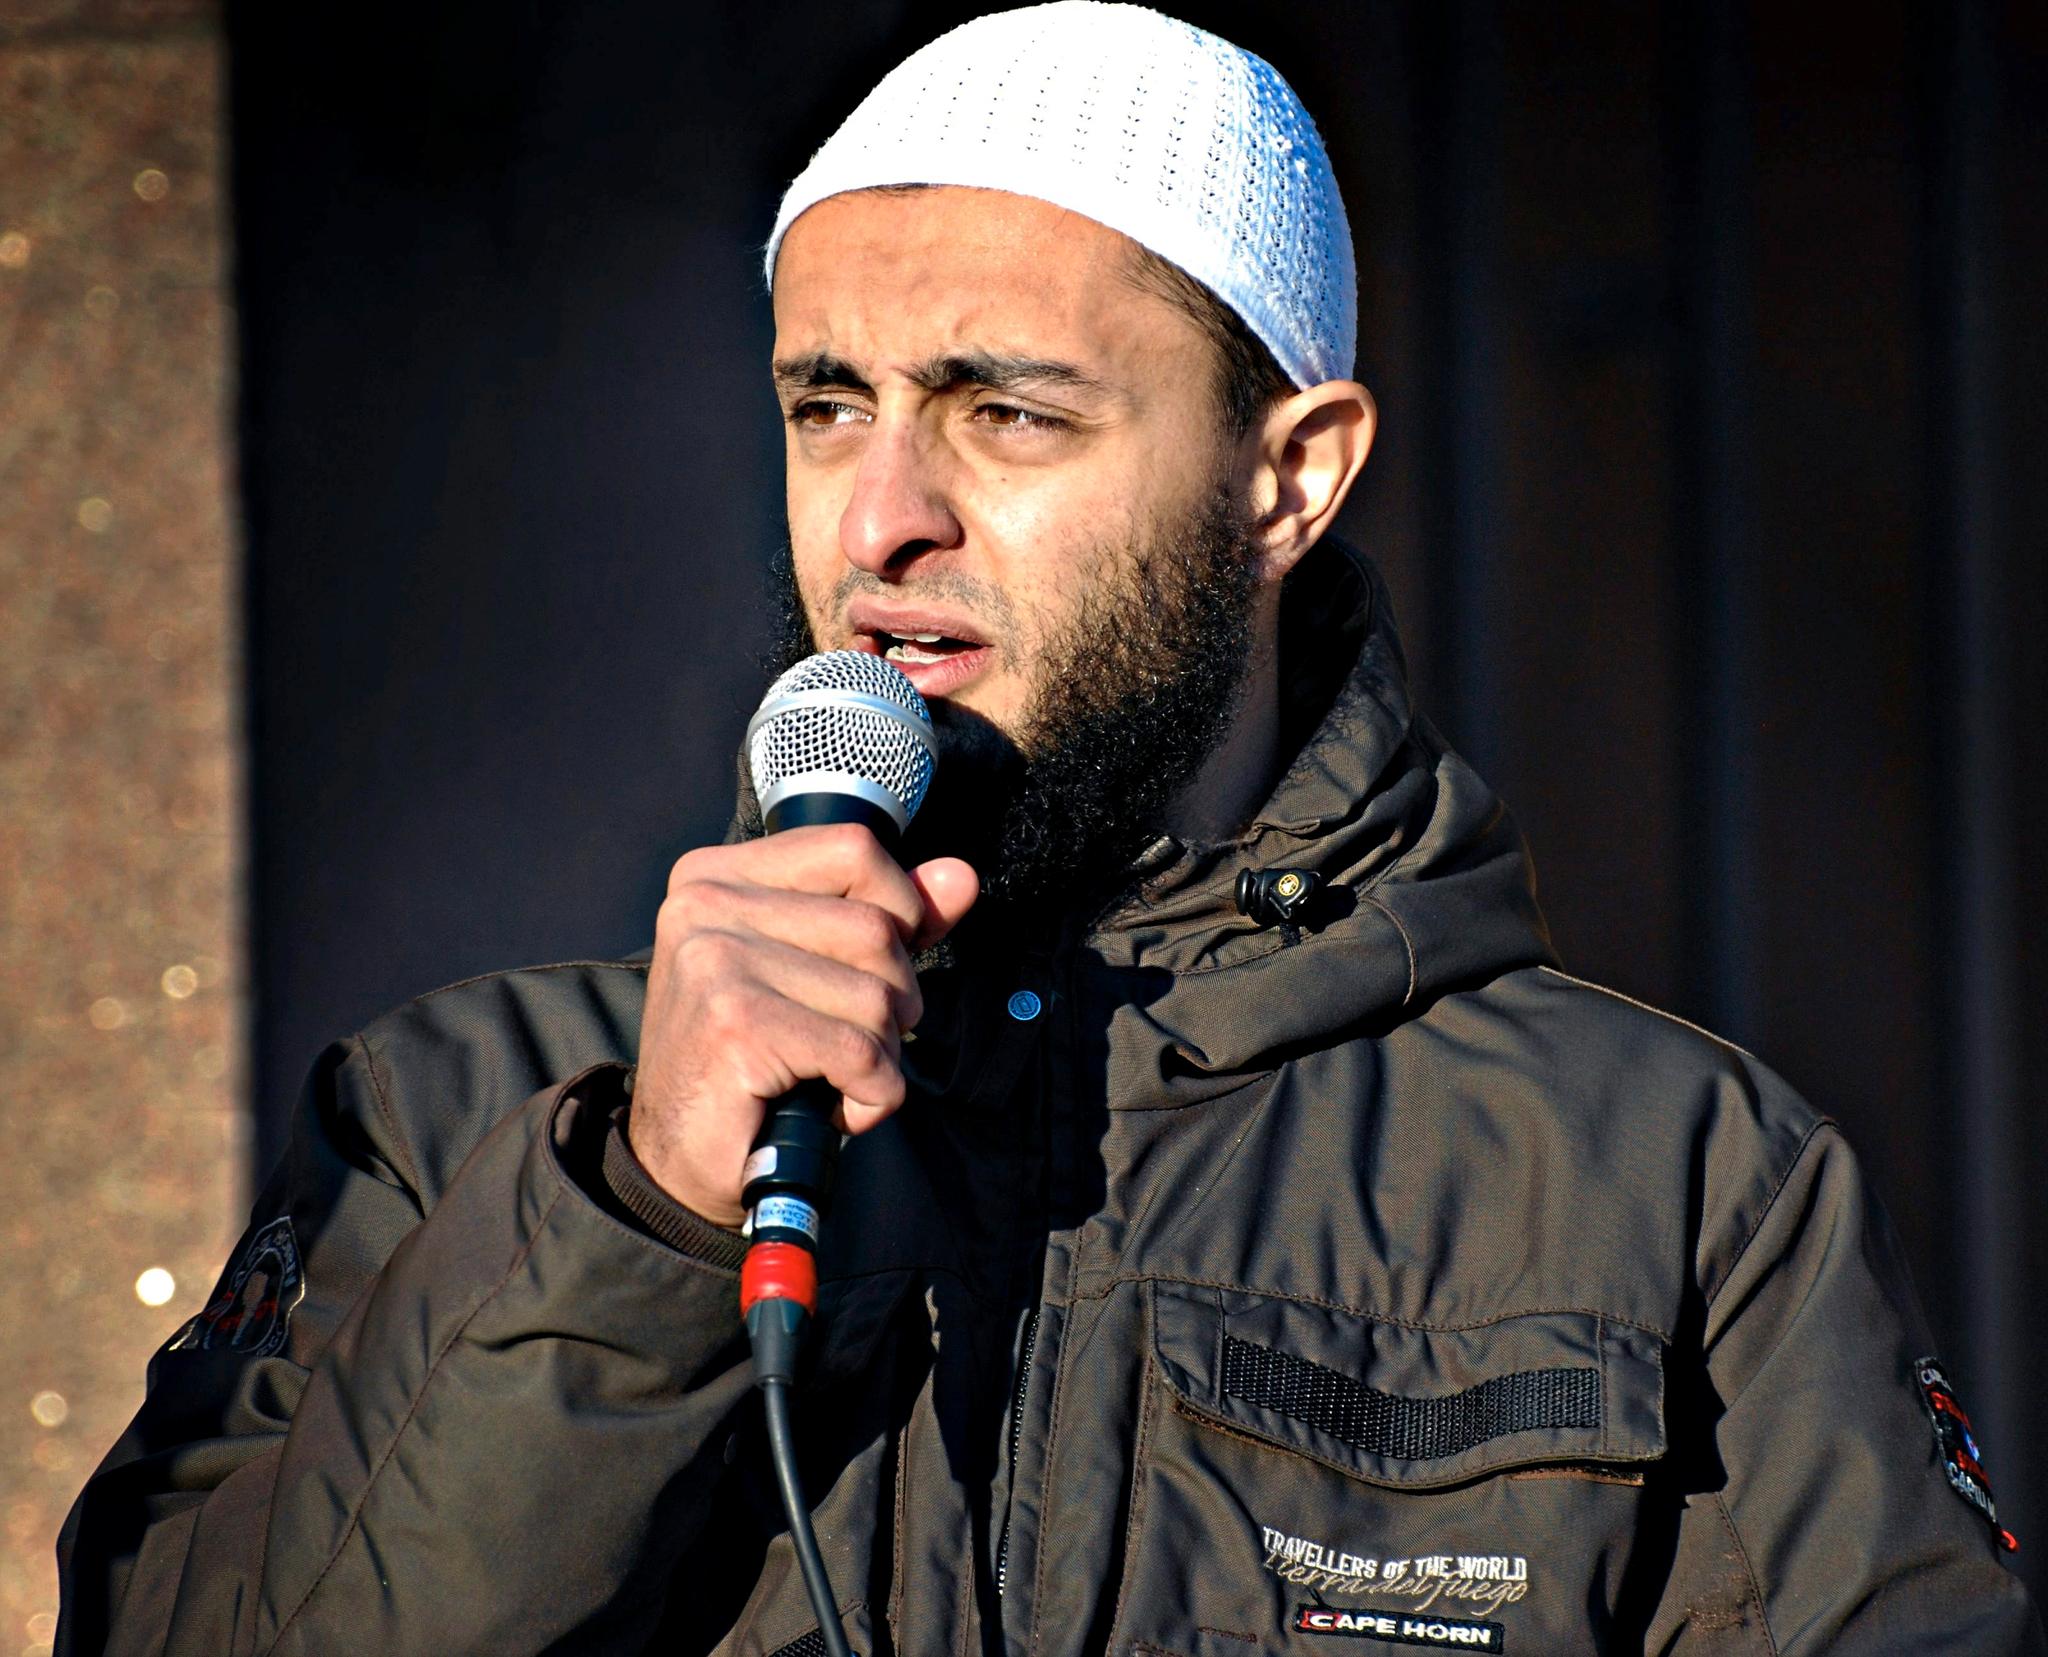 Mohyeldeen Mohammad blir nå etterlyst internasjonalt. Her fra en demonstrasjon mot at Dagbladet trykket karikaturtegninger av profeten Muhammed i 2010. 